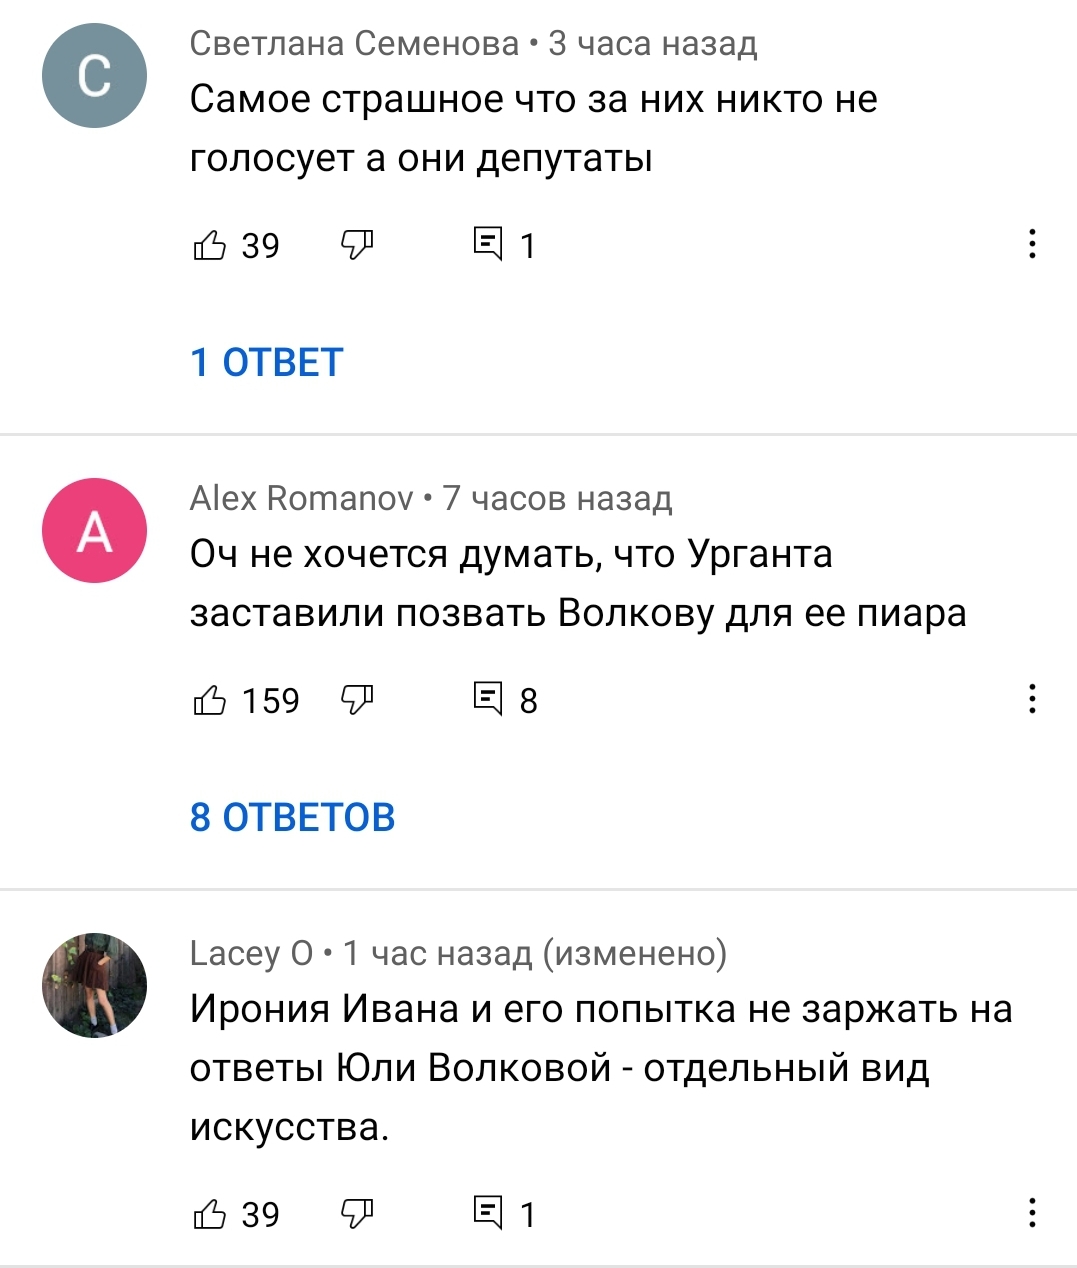 Участие Юлии Волковой в шоу "Вечерний Ургант" закончилось провалом